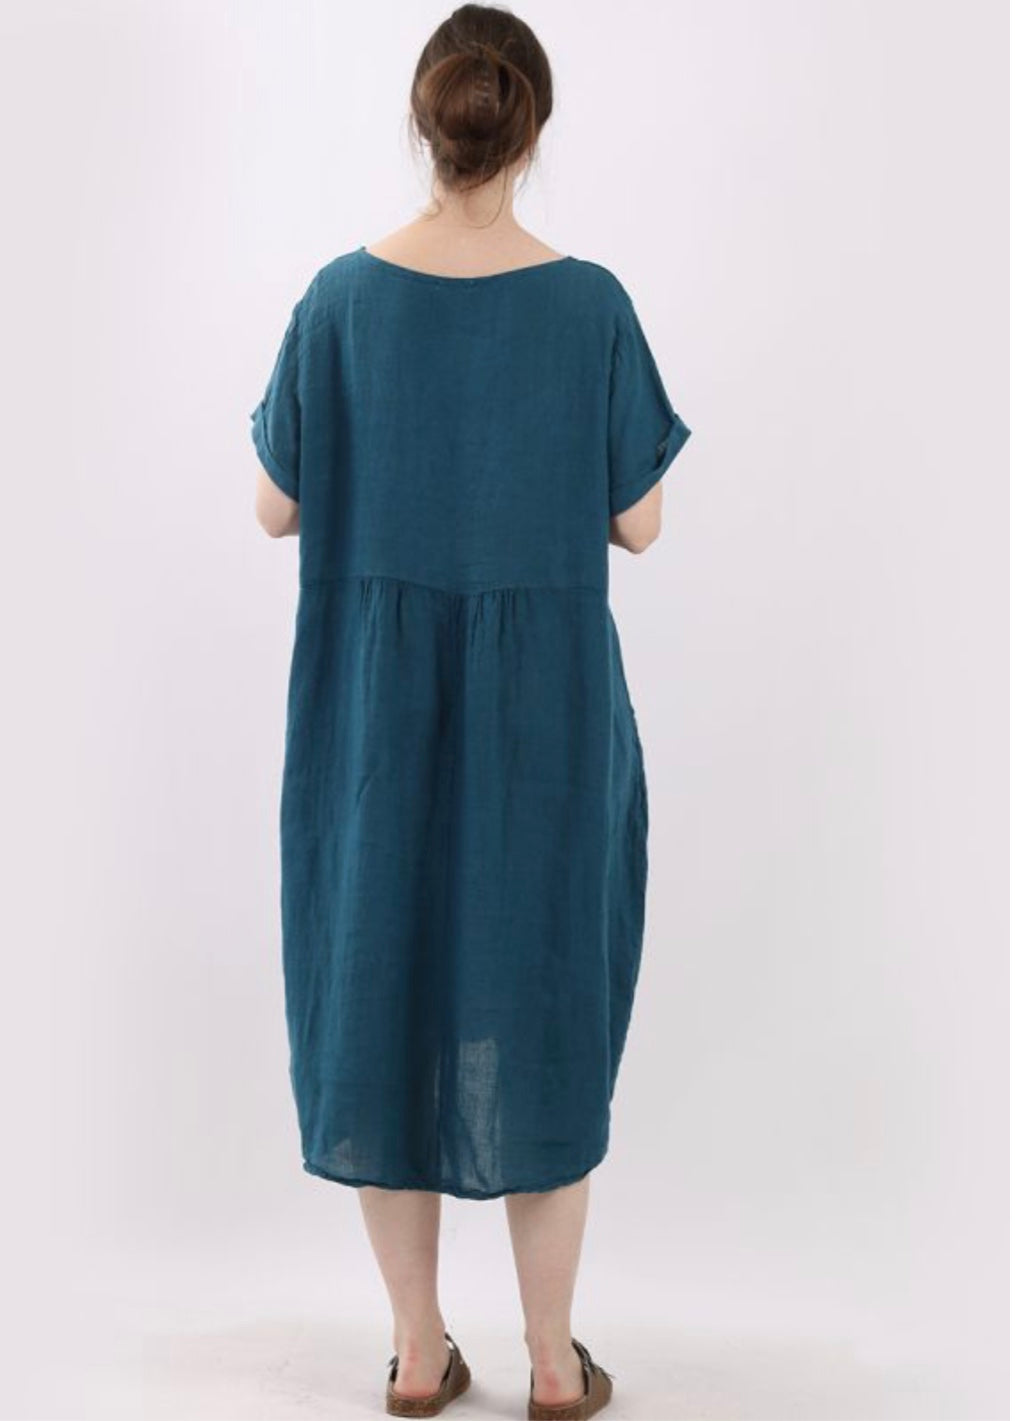 Sands - Lagenlook Linen Dress / Teal